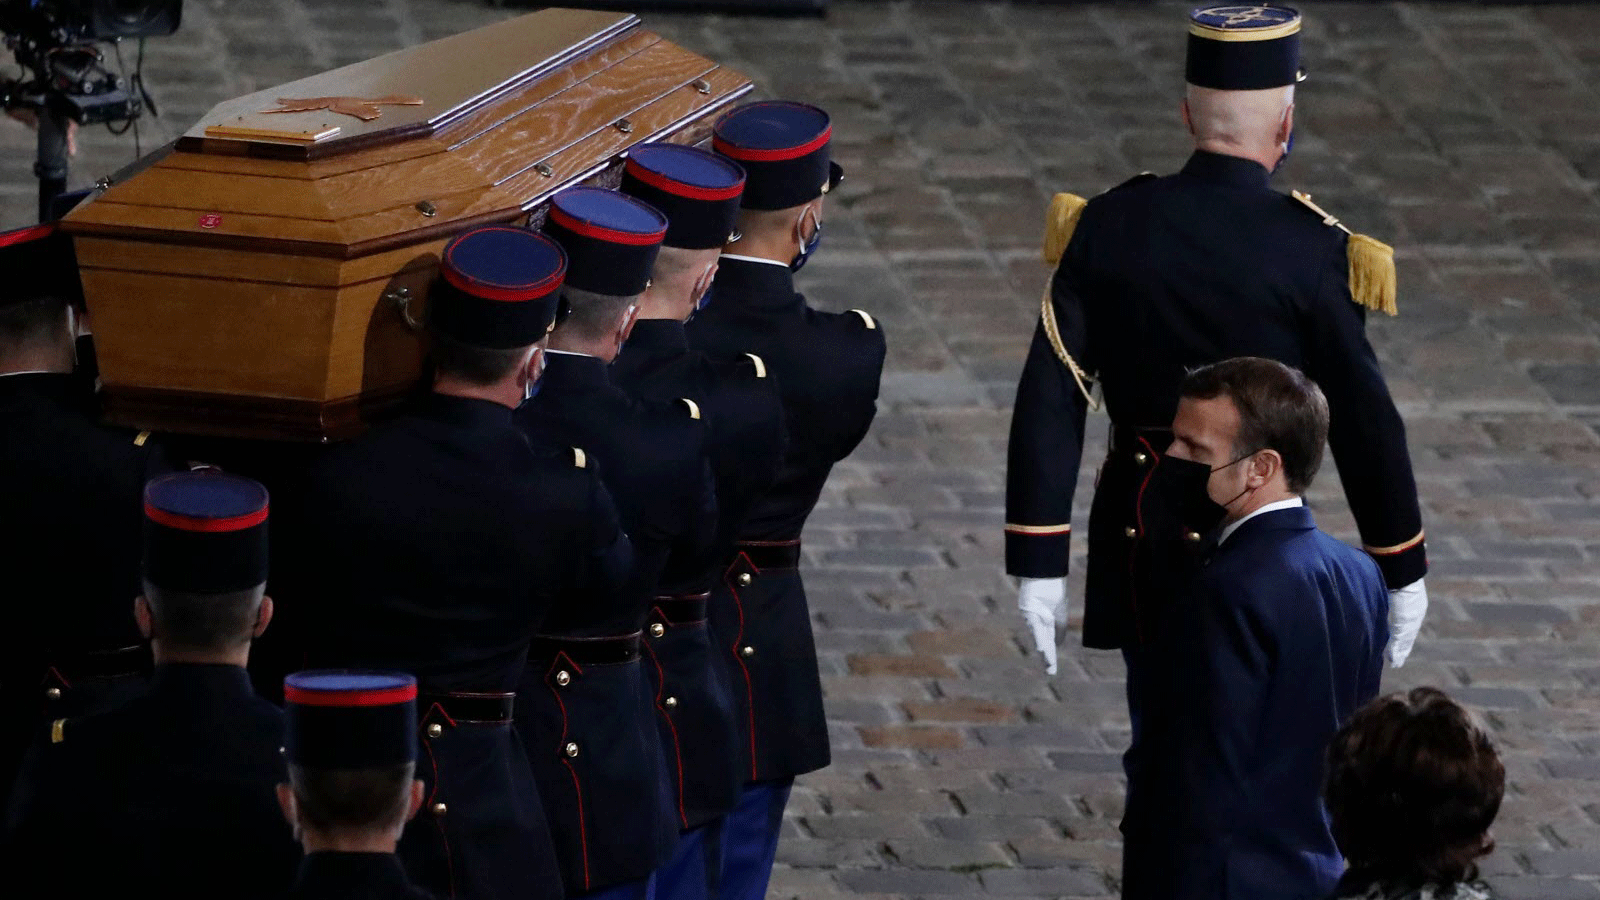 الرئيس الفرنسي إيمانويل ماكرون يتقدم مشيعي الأستاذ المغدور صامويل باتي، الذي قتل في اعتداء وحشي نفذه إرهابي مسلم